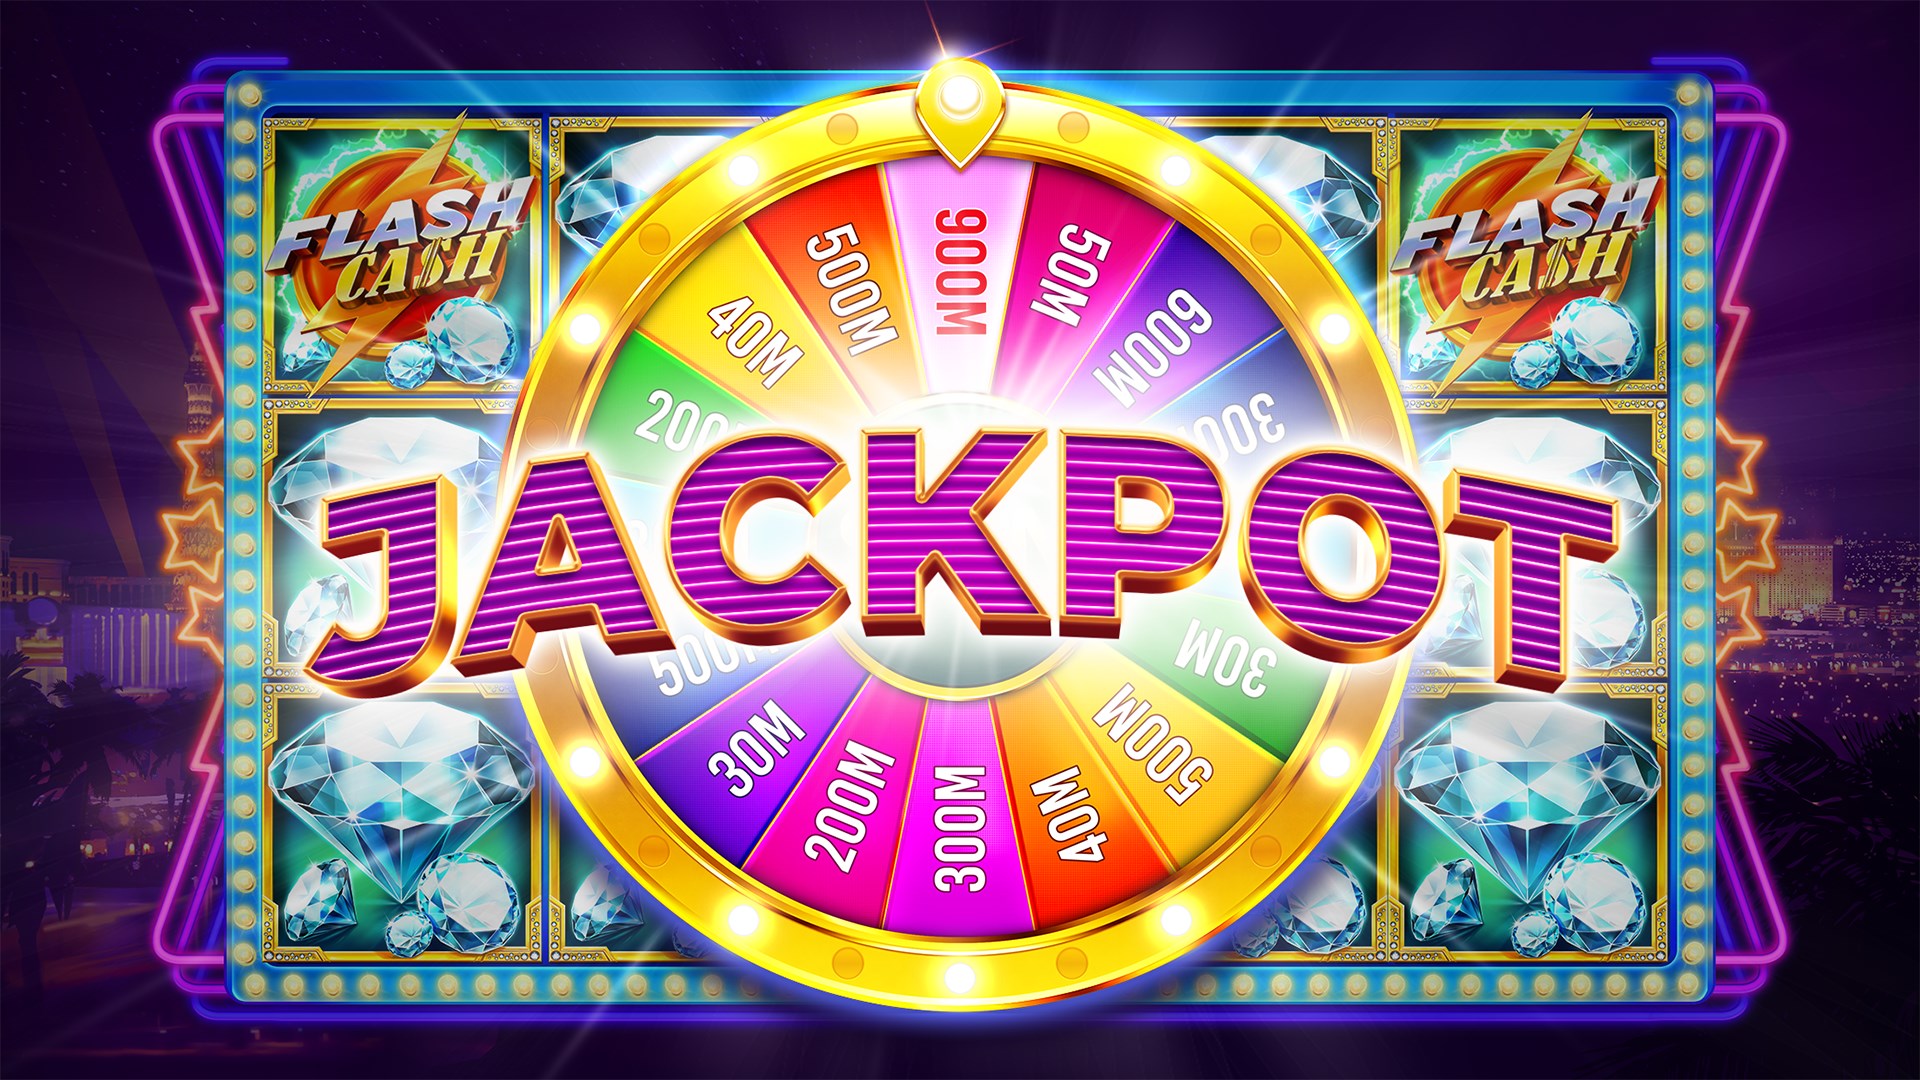 Jackpot là phần thưởng lớn nhất trong slot game